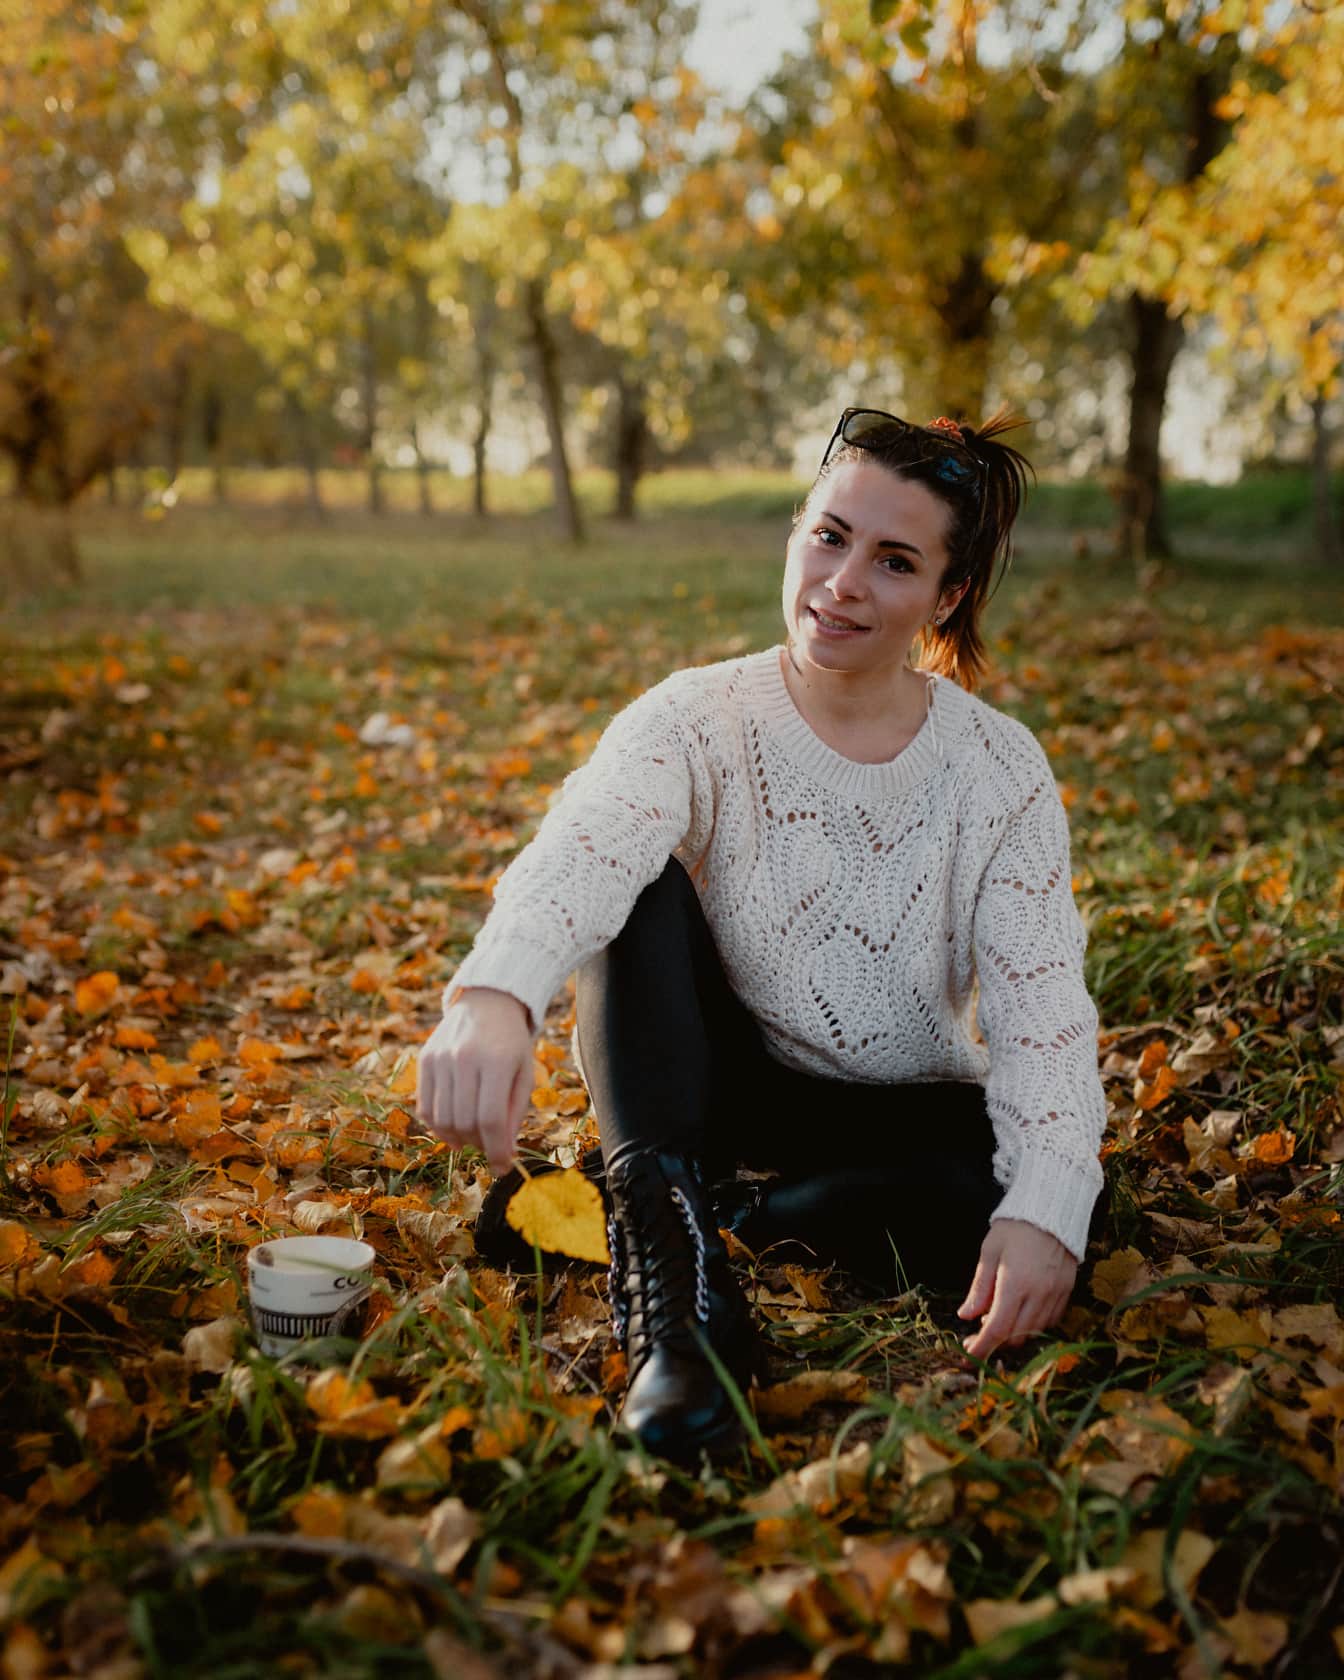 Elég vidám barna, aki a parkban ül a földön az őszi szezonban